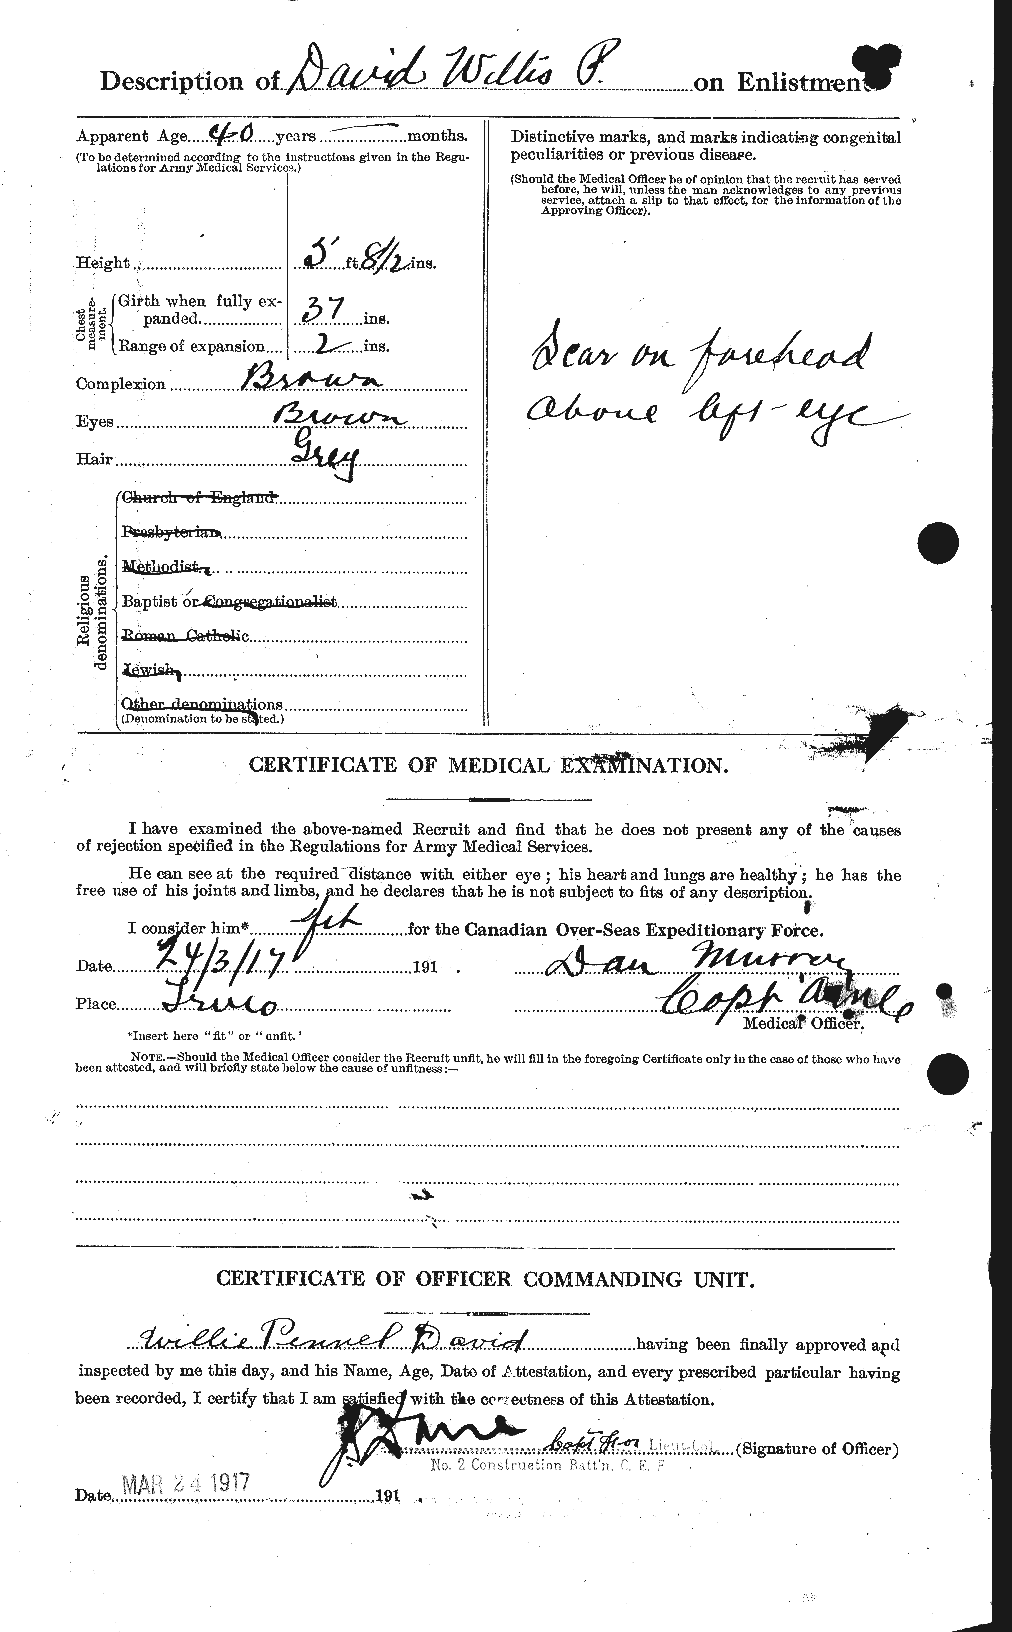 Dossiers du Personnel de la Première Guerre mondiale - CEC 280652b